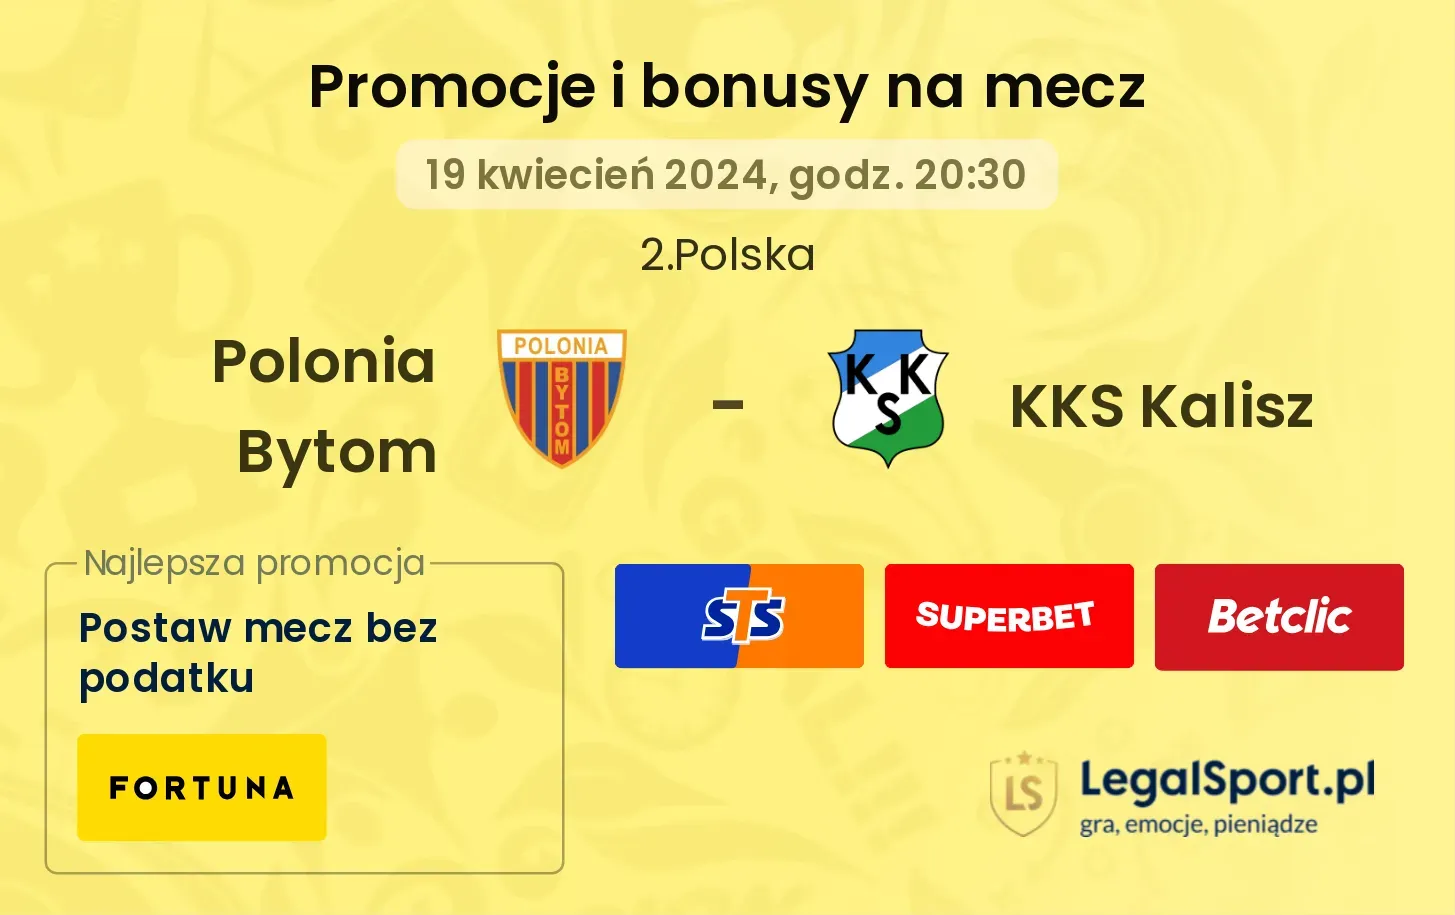 Polonia Bytom - KKS Kalisz promocje bonusy na mecz